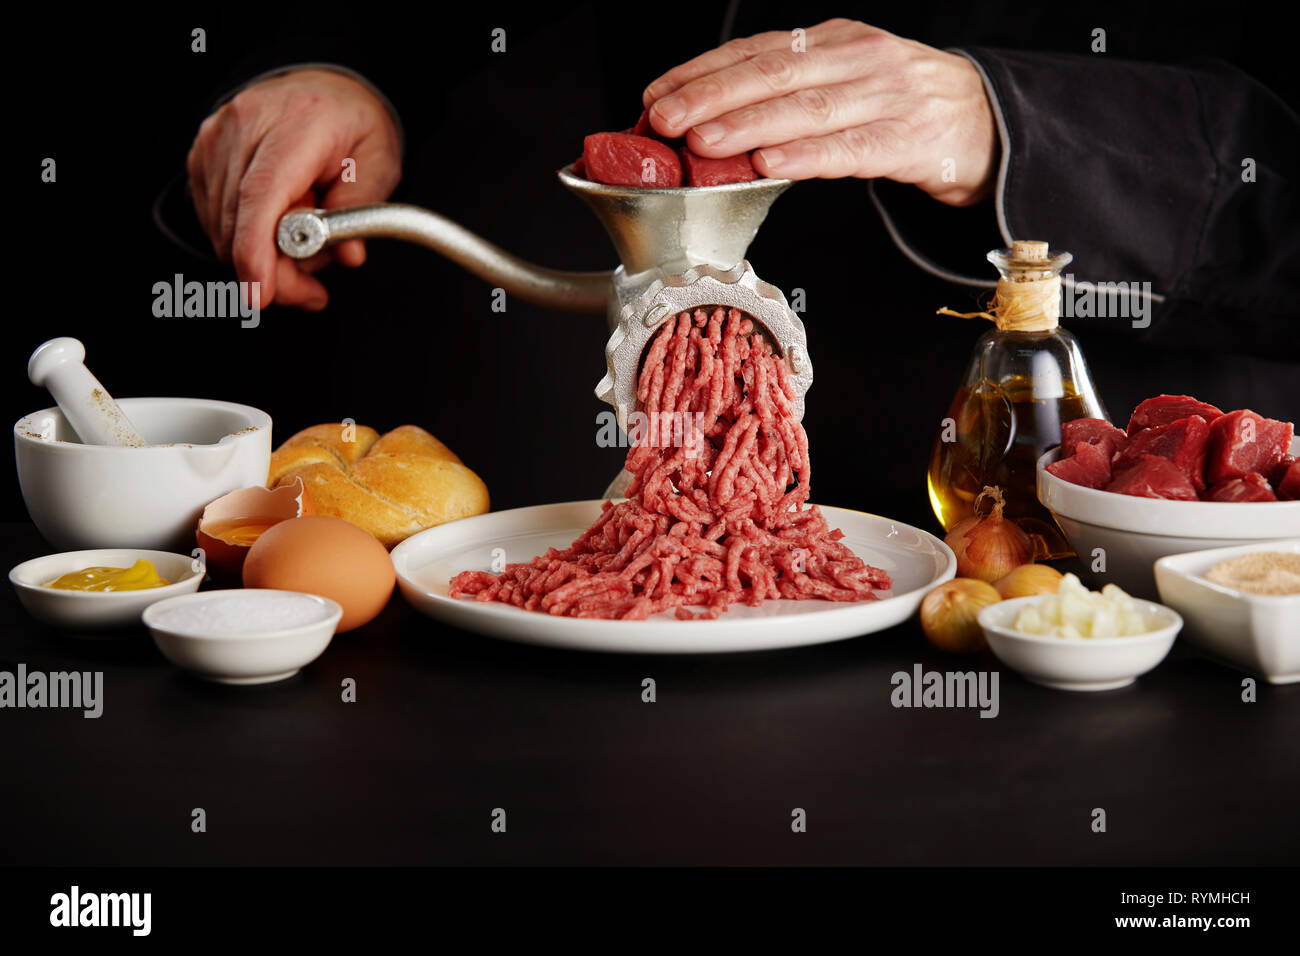 https://c8.alamy.com/compes/rymhch/hombre-picar-la-carne-con-la-amoladora-manual-en-black-mesa-de-la-cocina-visto-de-cerca-entre-platos-con-ingredientes-de-cocina-rymhch.jpg